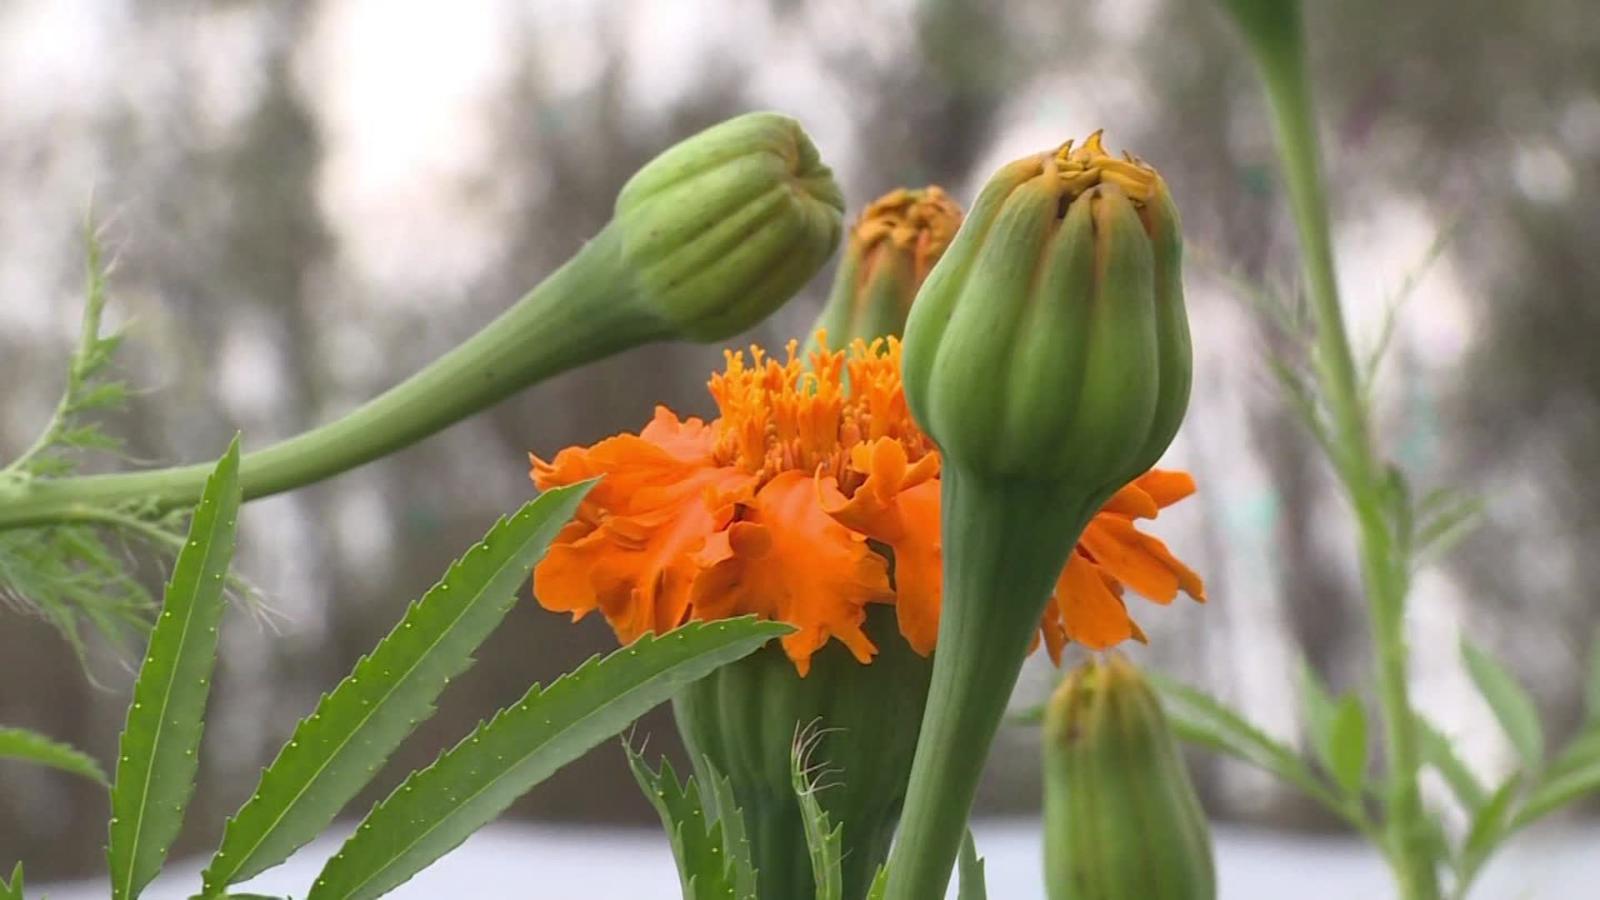 Cuál es el significado de la flor de muerto o cempasúchil? | Video | CNN